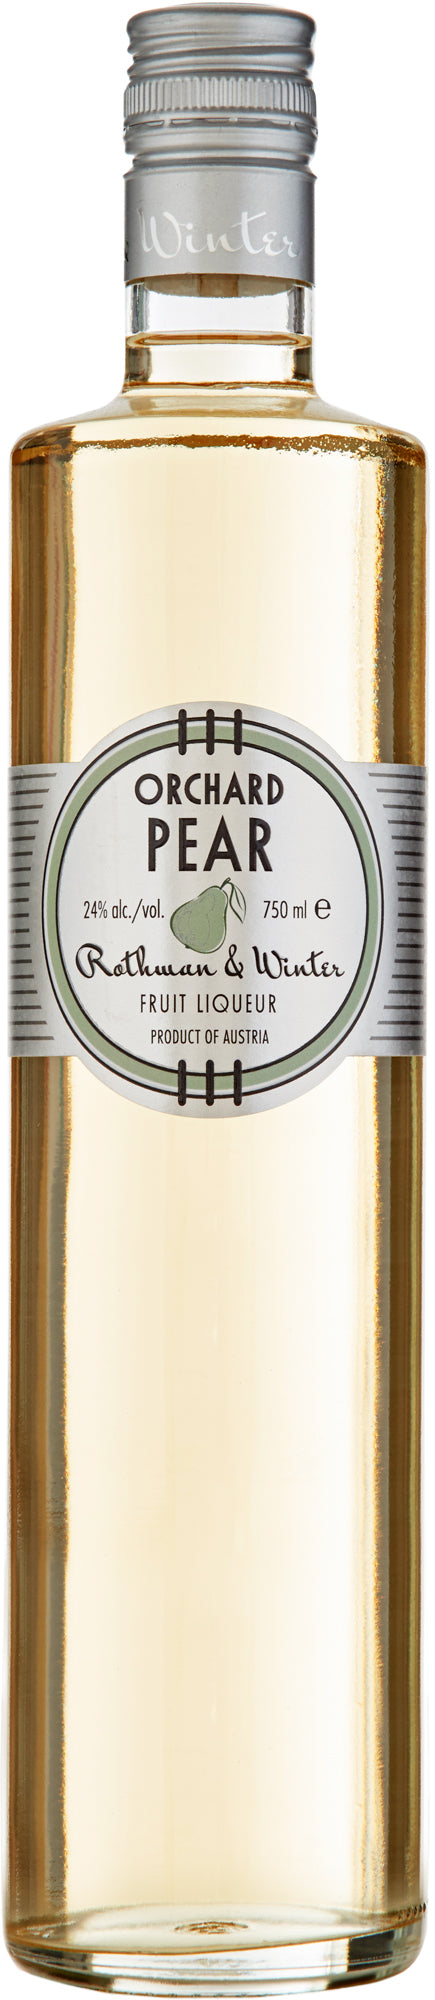 Rothman & Winter Orchard Pear Liqueur Austria